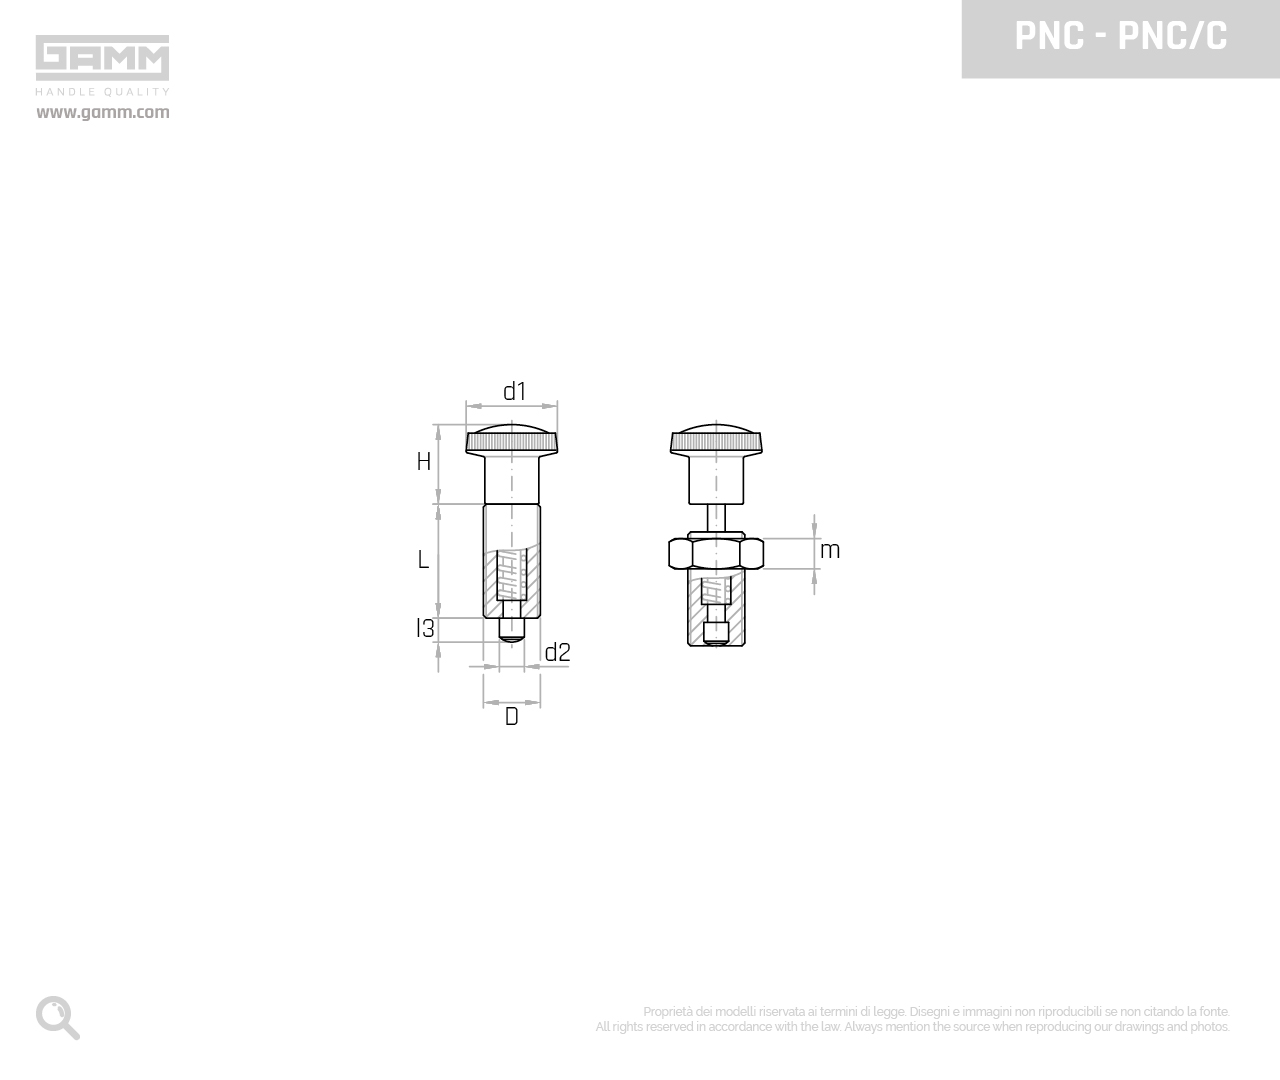 PNC PNC C disegno pistoncini e pressori GAMM